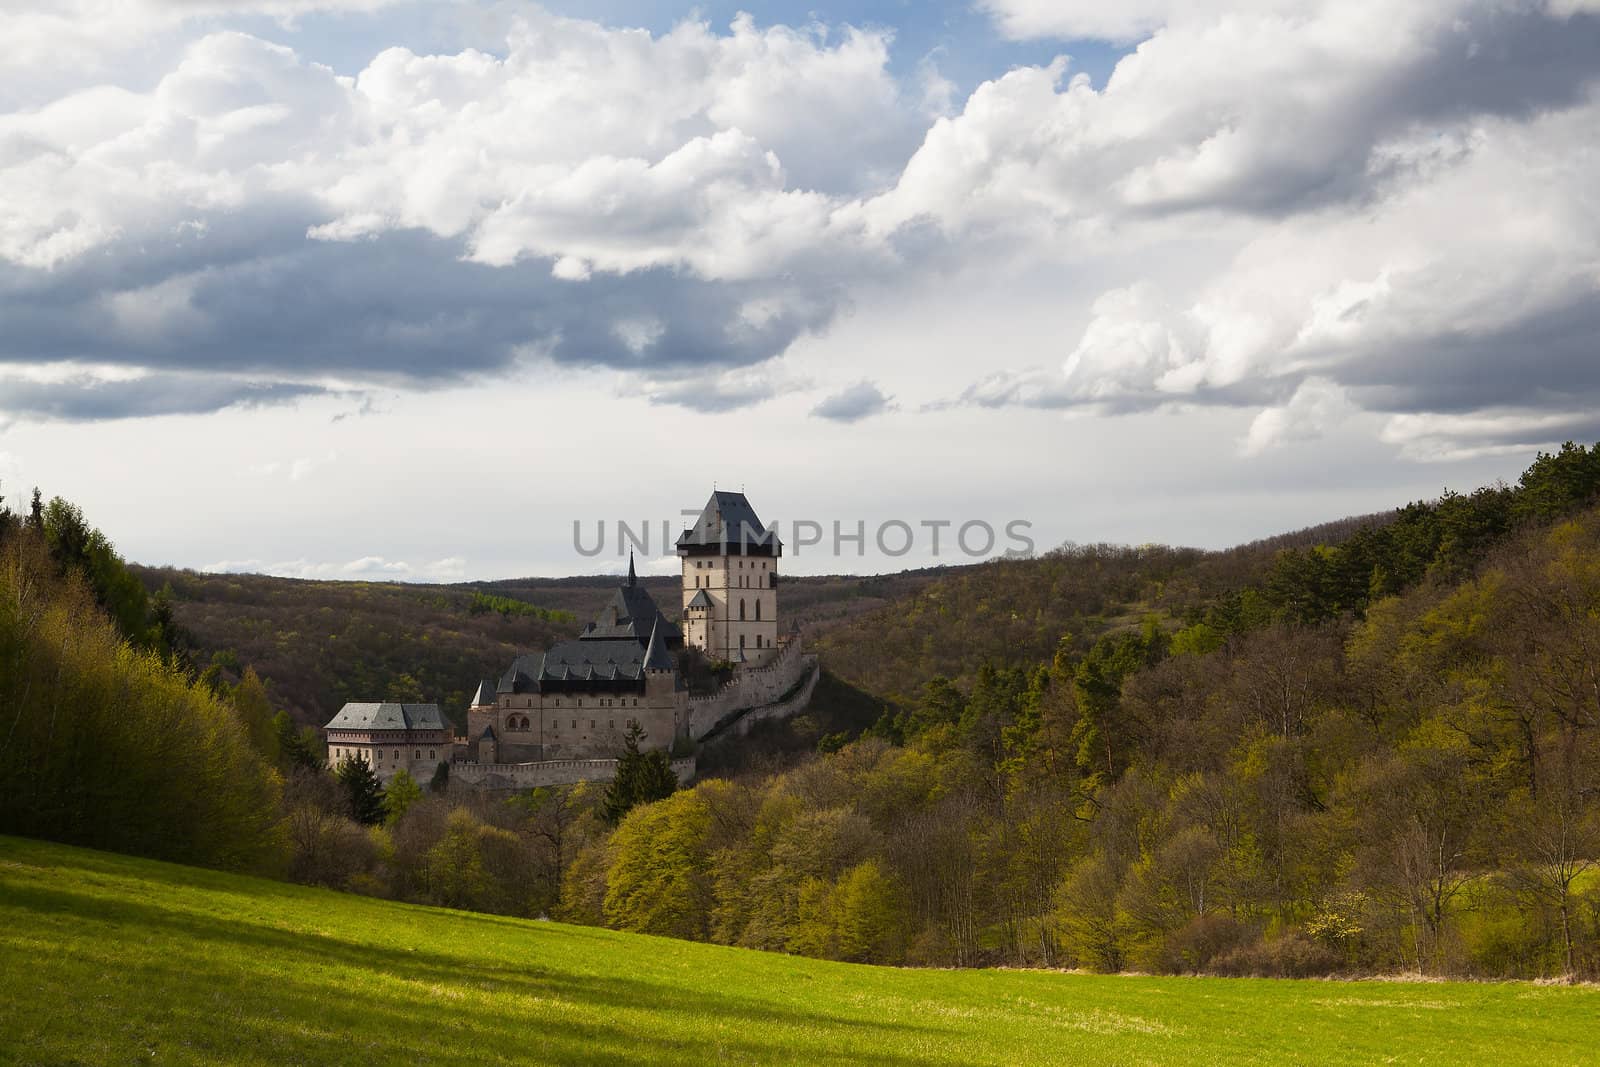 Karlstejn Castle in Czech Republic